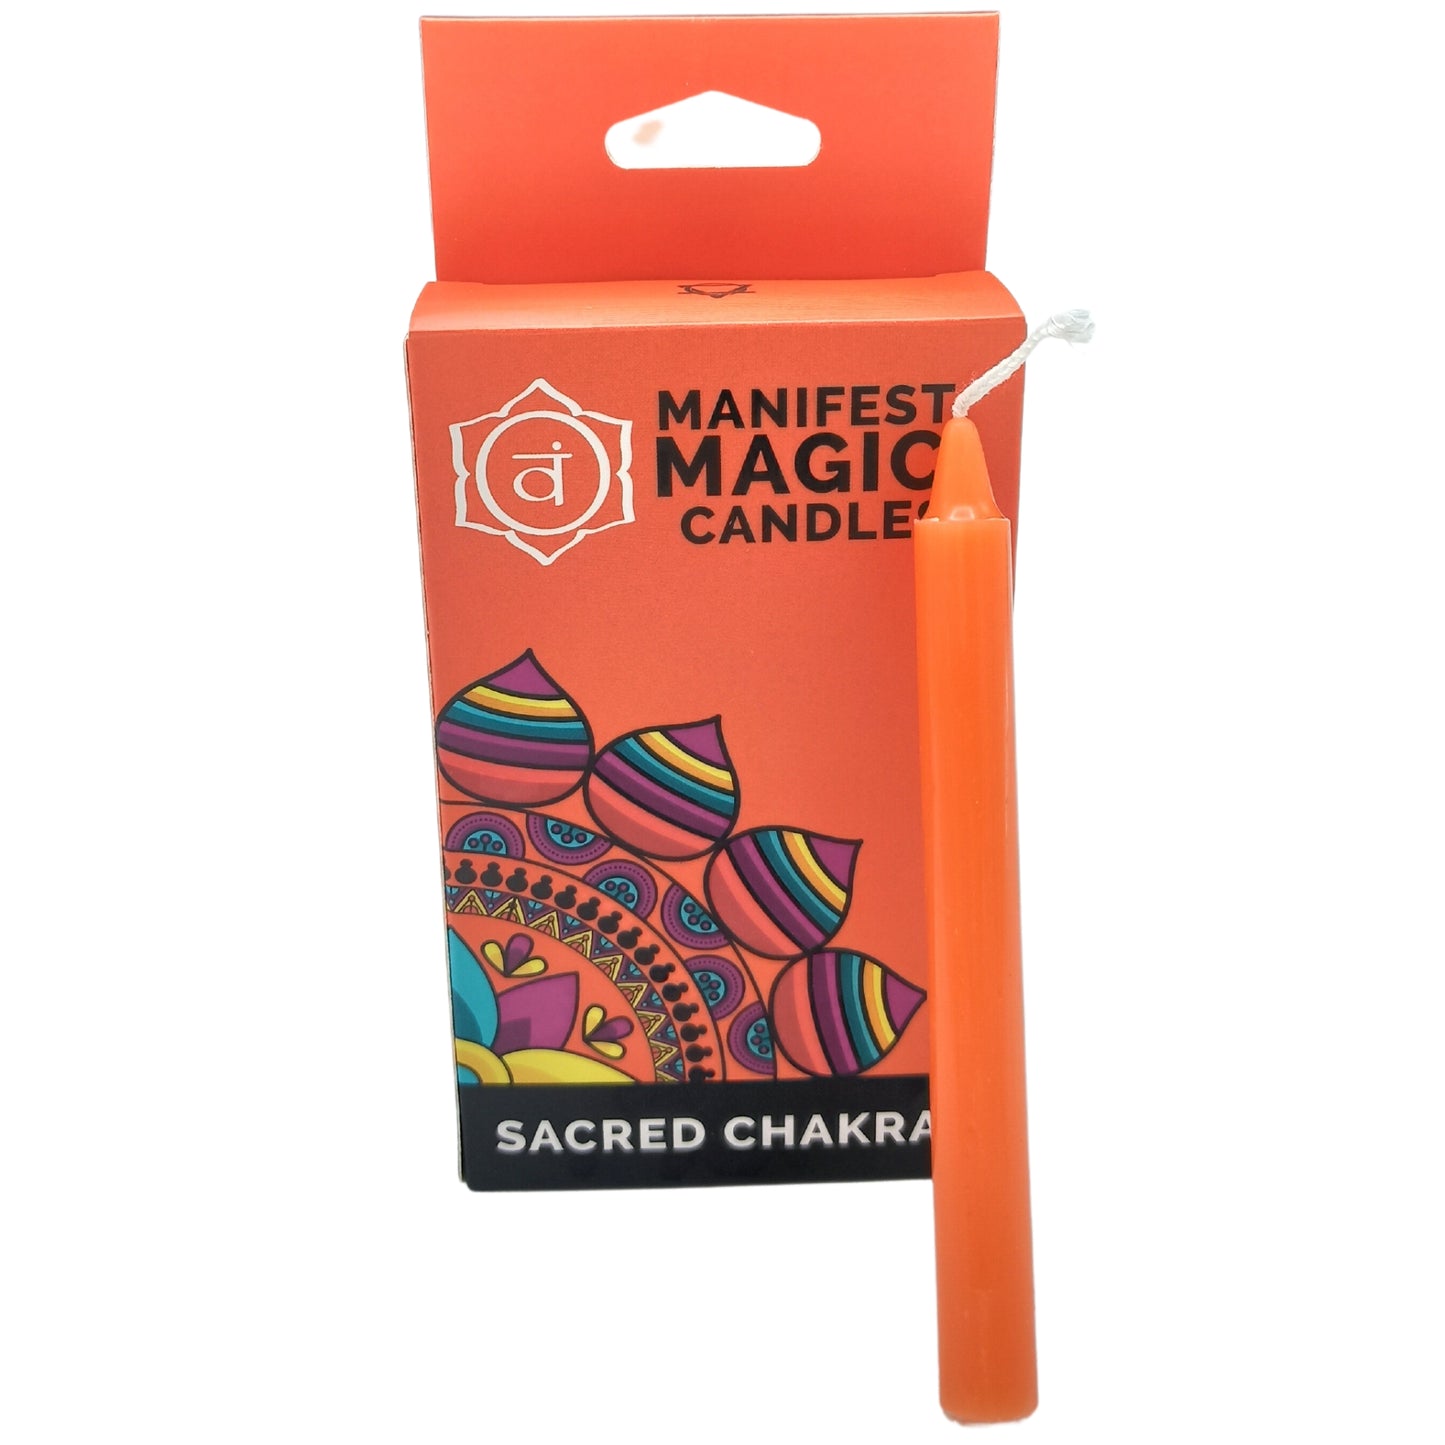 Manifest Magic Candles (pack of 12) - Orange - Sacred Chakra